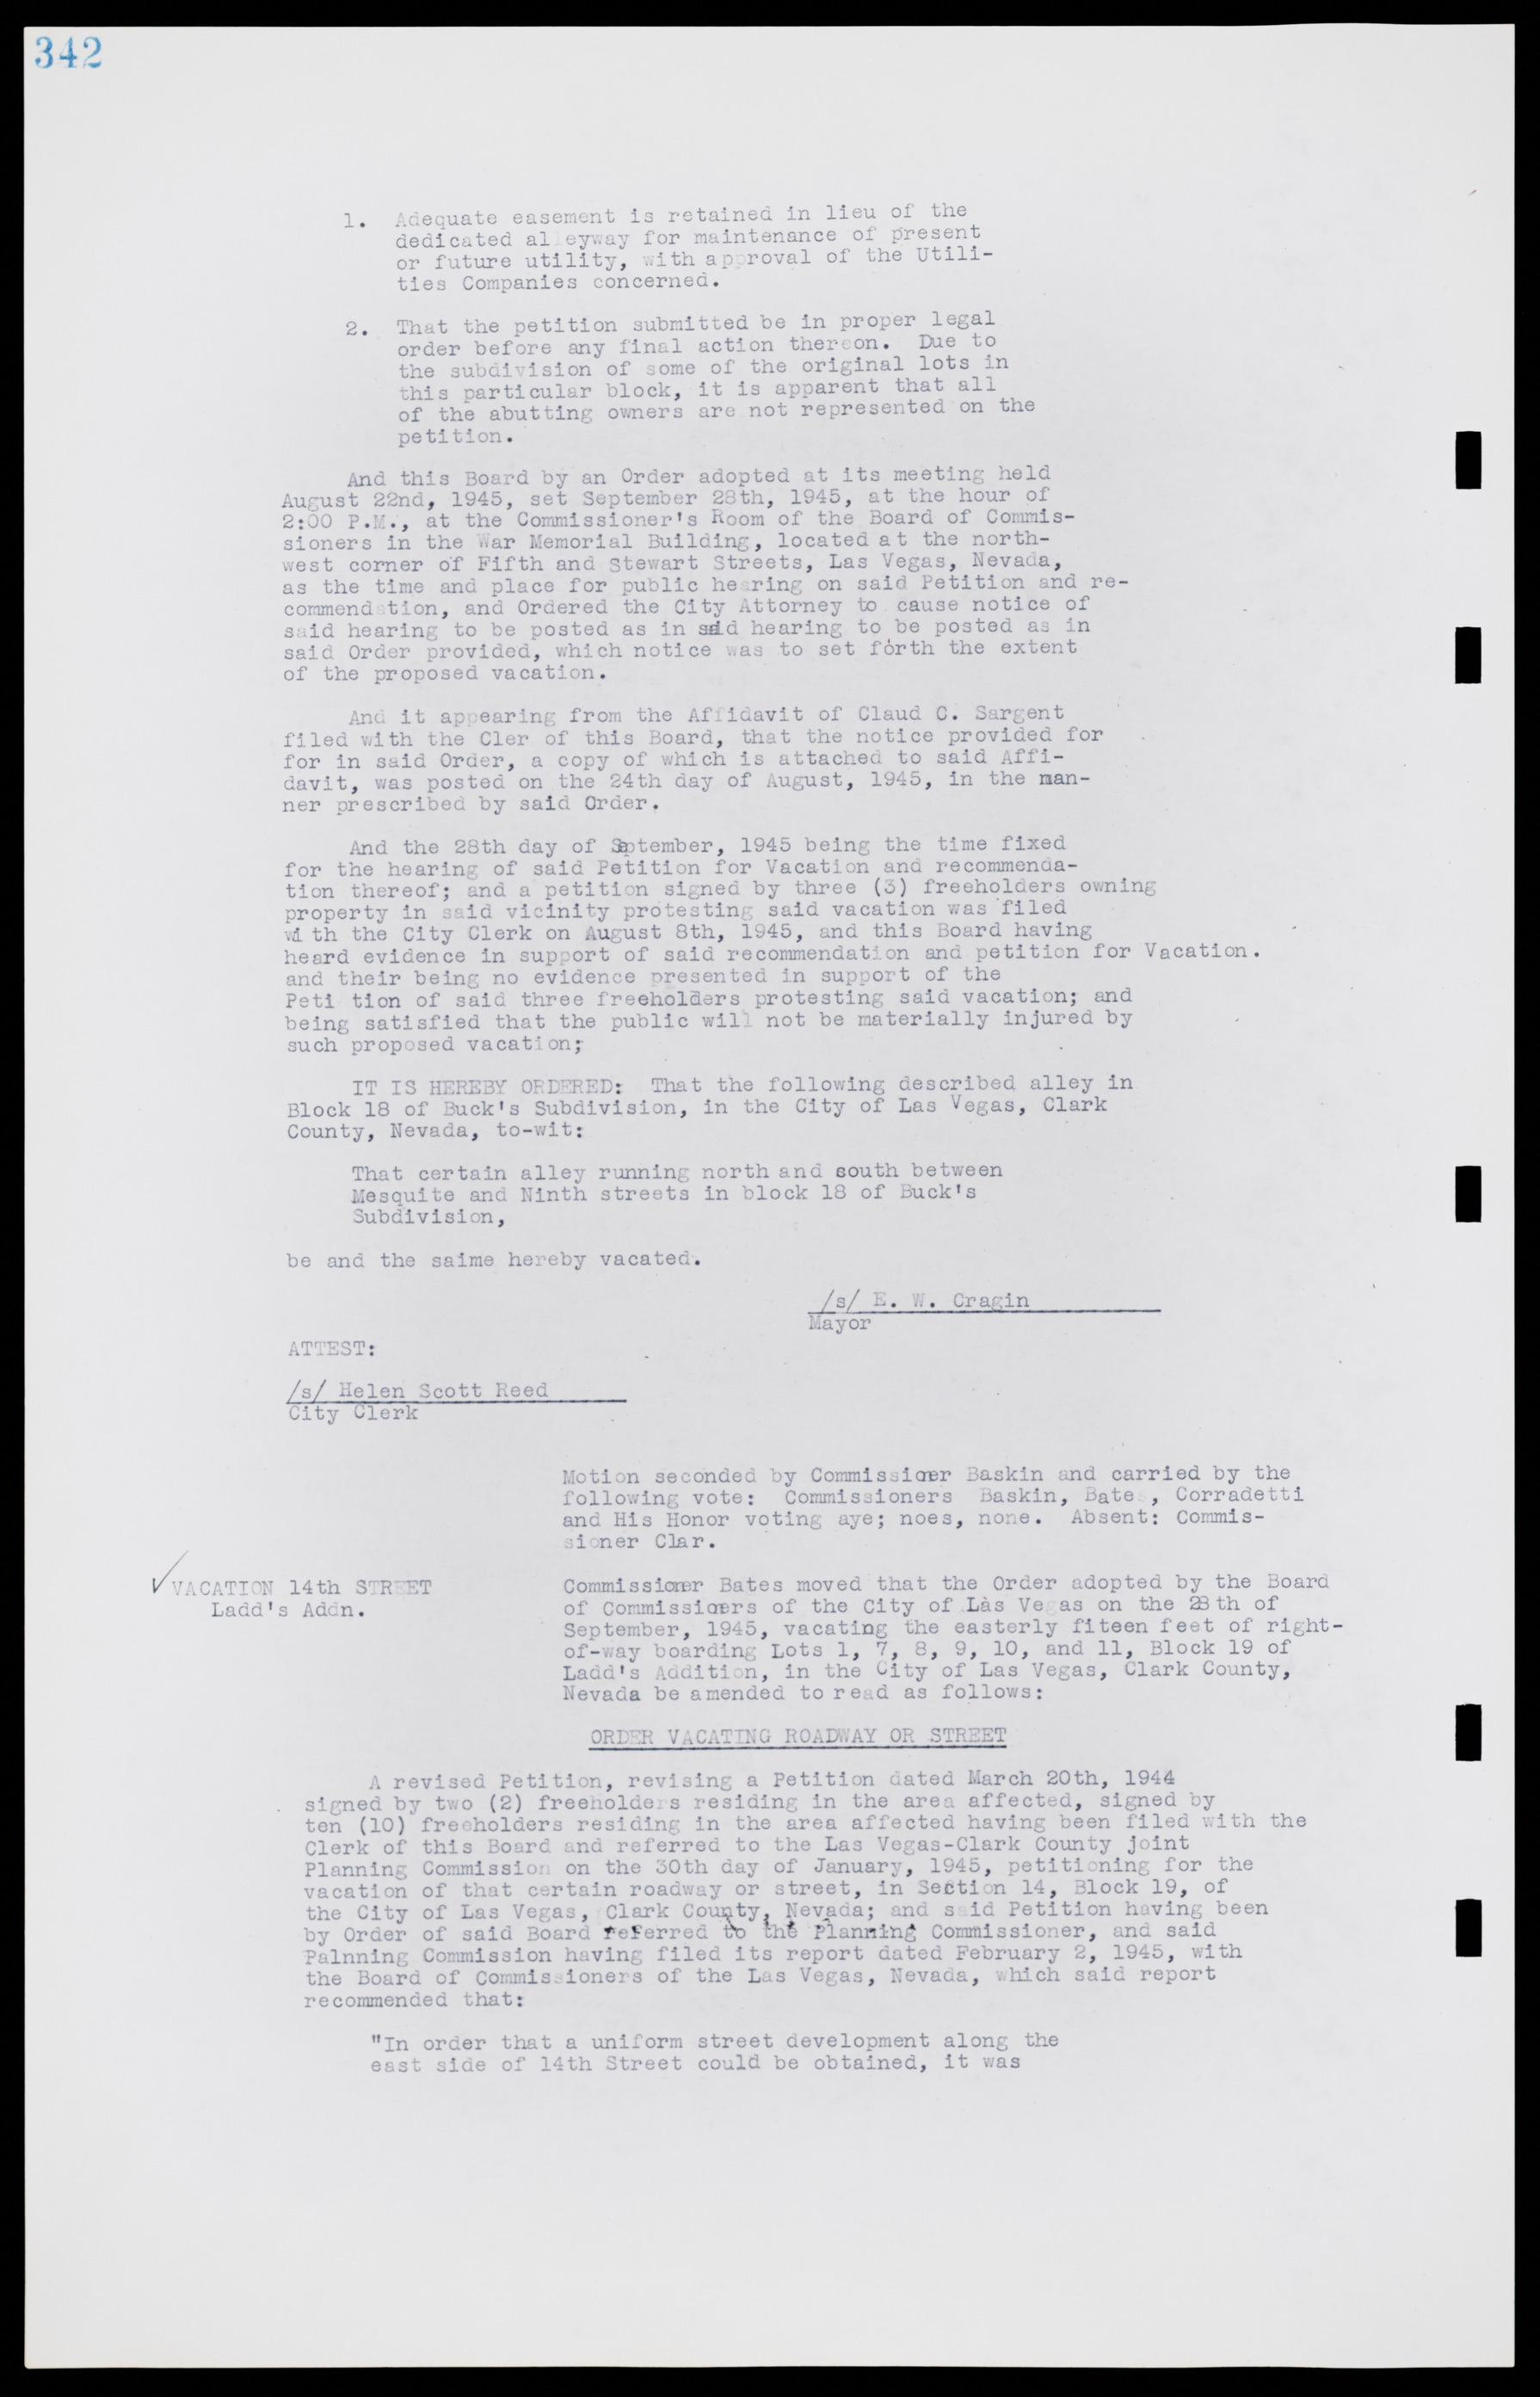 Las Vegas City Commission Minutes, August 11, 1942 to December 30, 1946, lvc000005-367